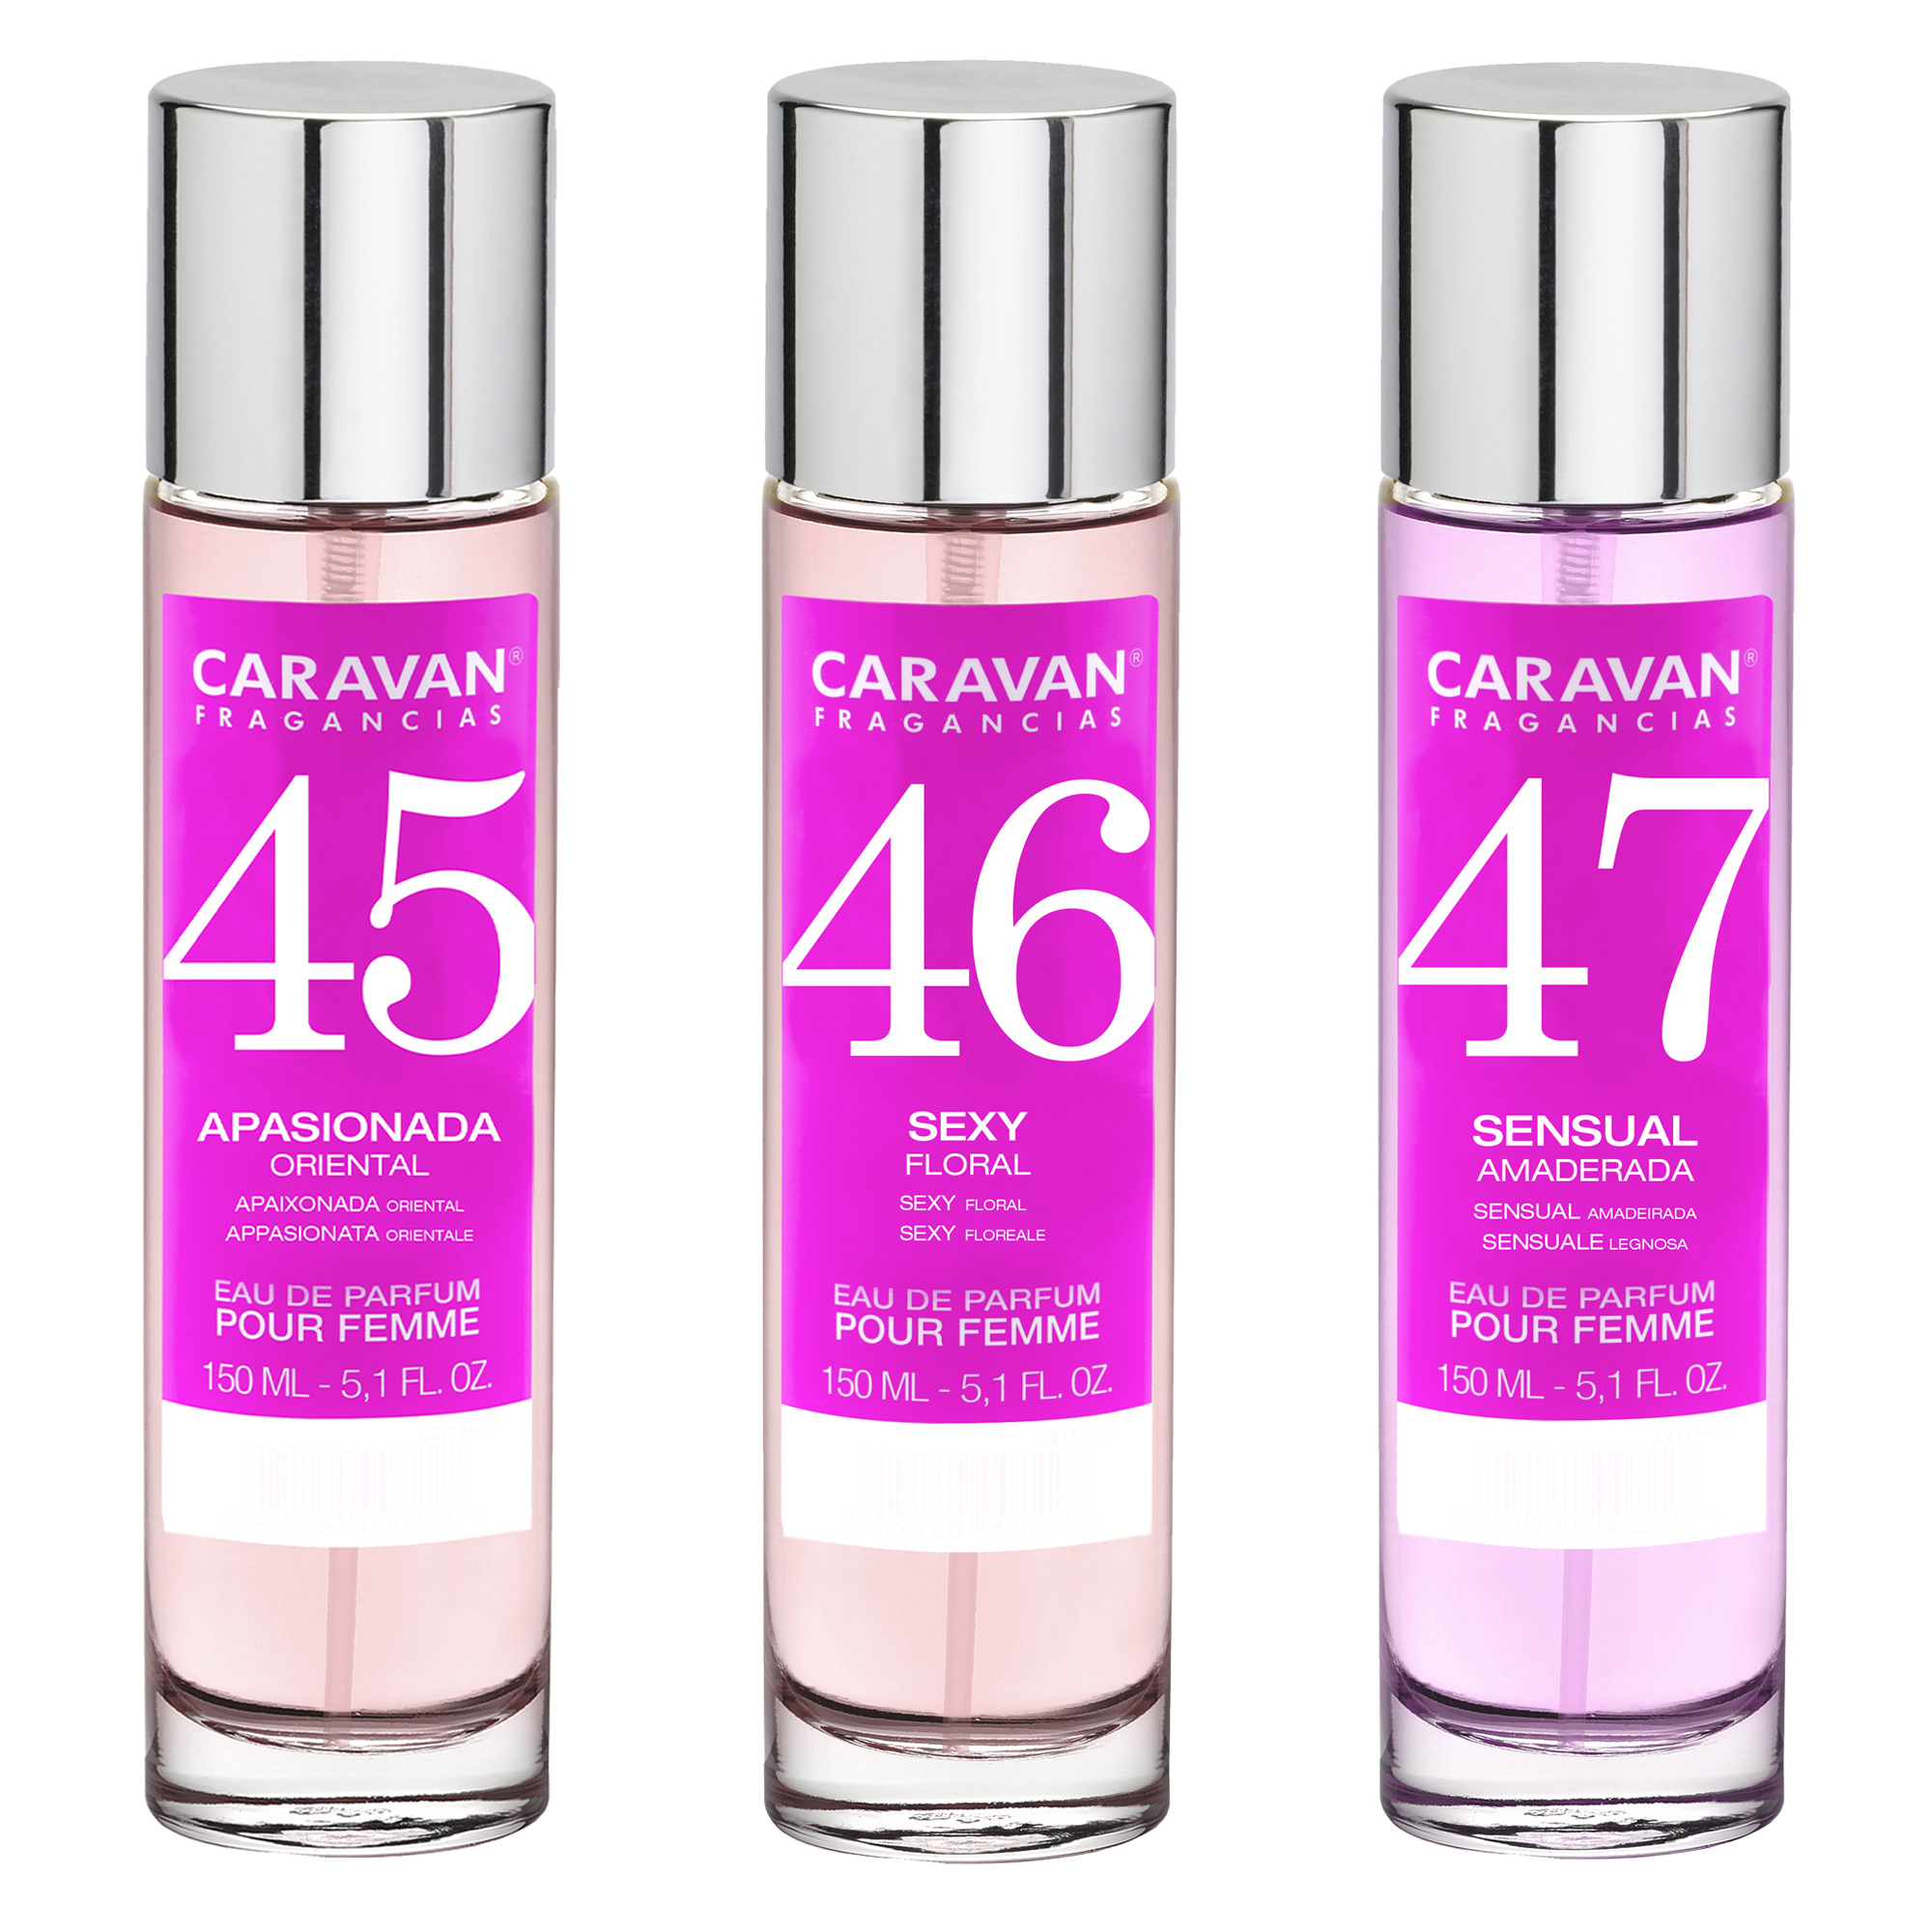 Caravan Fragancias - 3x Caravan Perfume de Hombre Nº45 Nº46 Nº47 - 150ml.